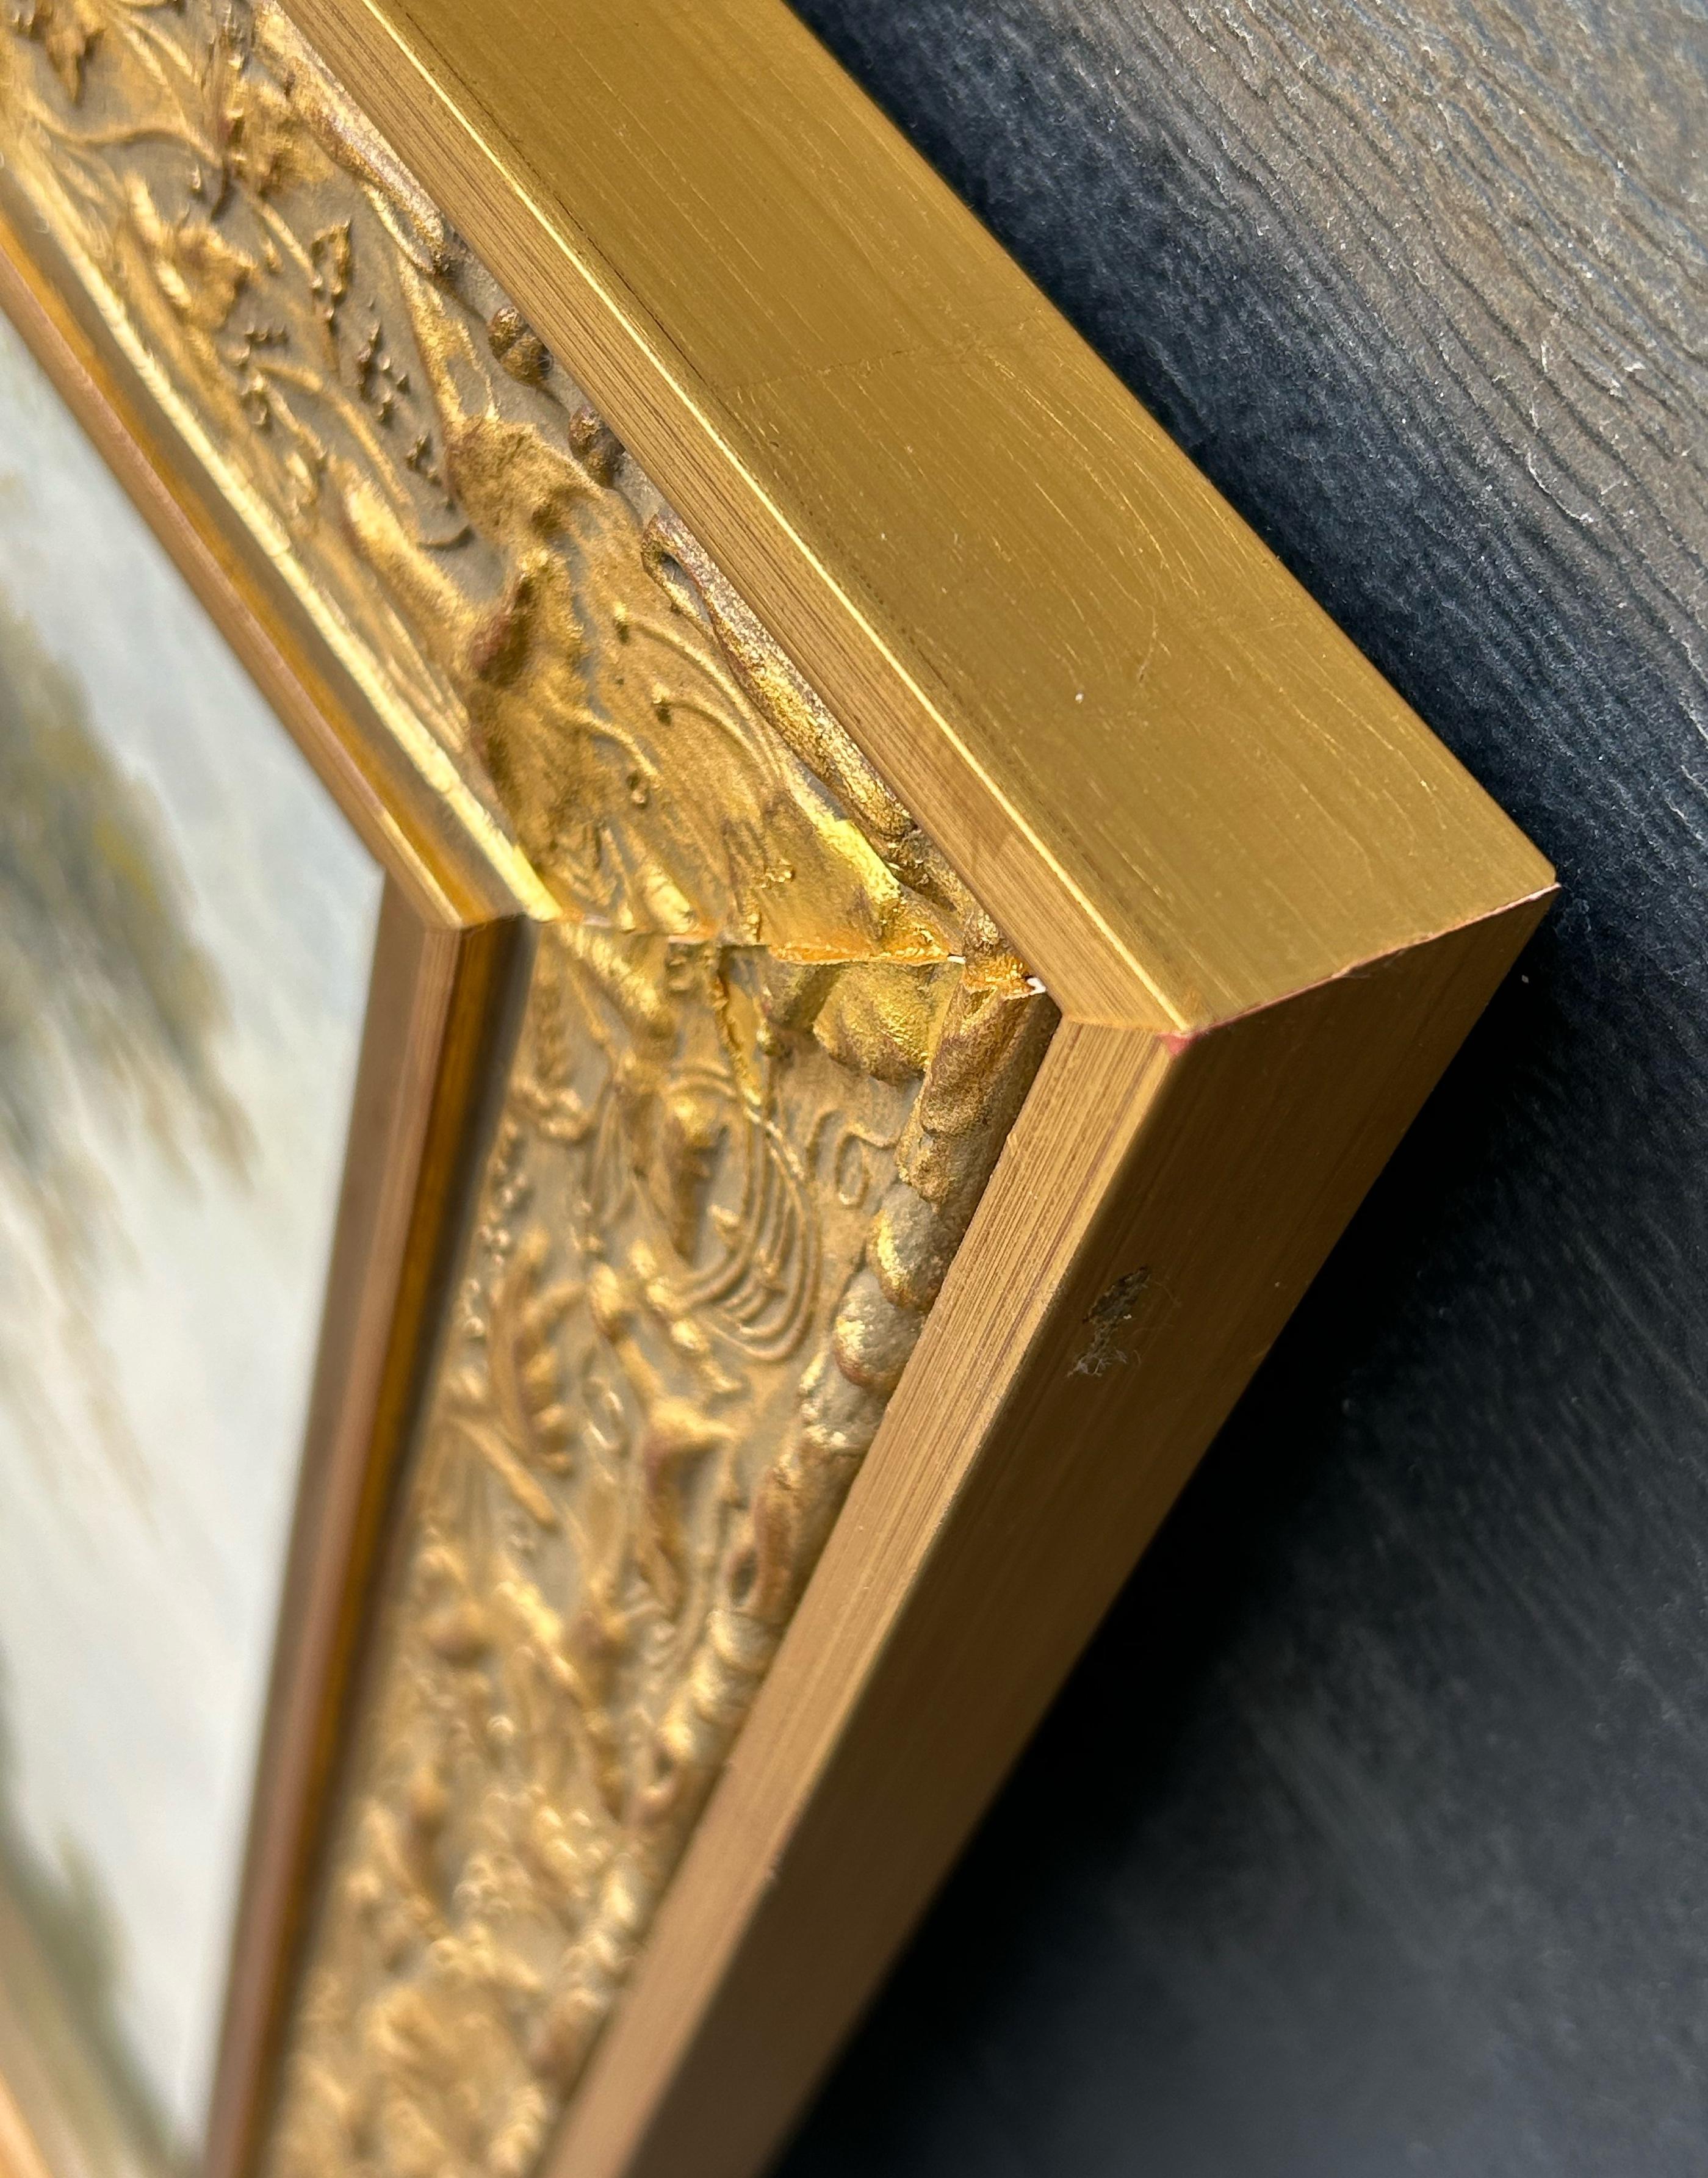 Paul ARMANDI (19. Jahrhundert)
Wood Landscapes am Fluss  
Öl auf Leinwand im Paar signiert unten rechts
Neue goldene Rahmen  
Abmessungen des Fahrgestells: 40 X 65 cm
Rahmen Abmessung: 50 X 75 cm
Paul ARMANDI gehört zu den Malern der Schule von